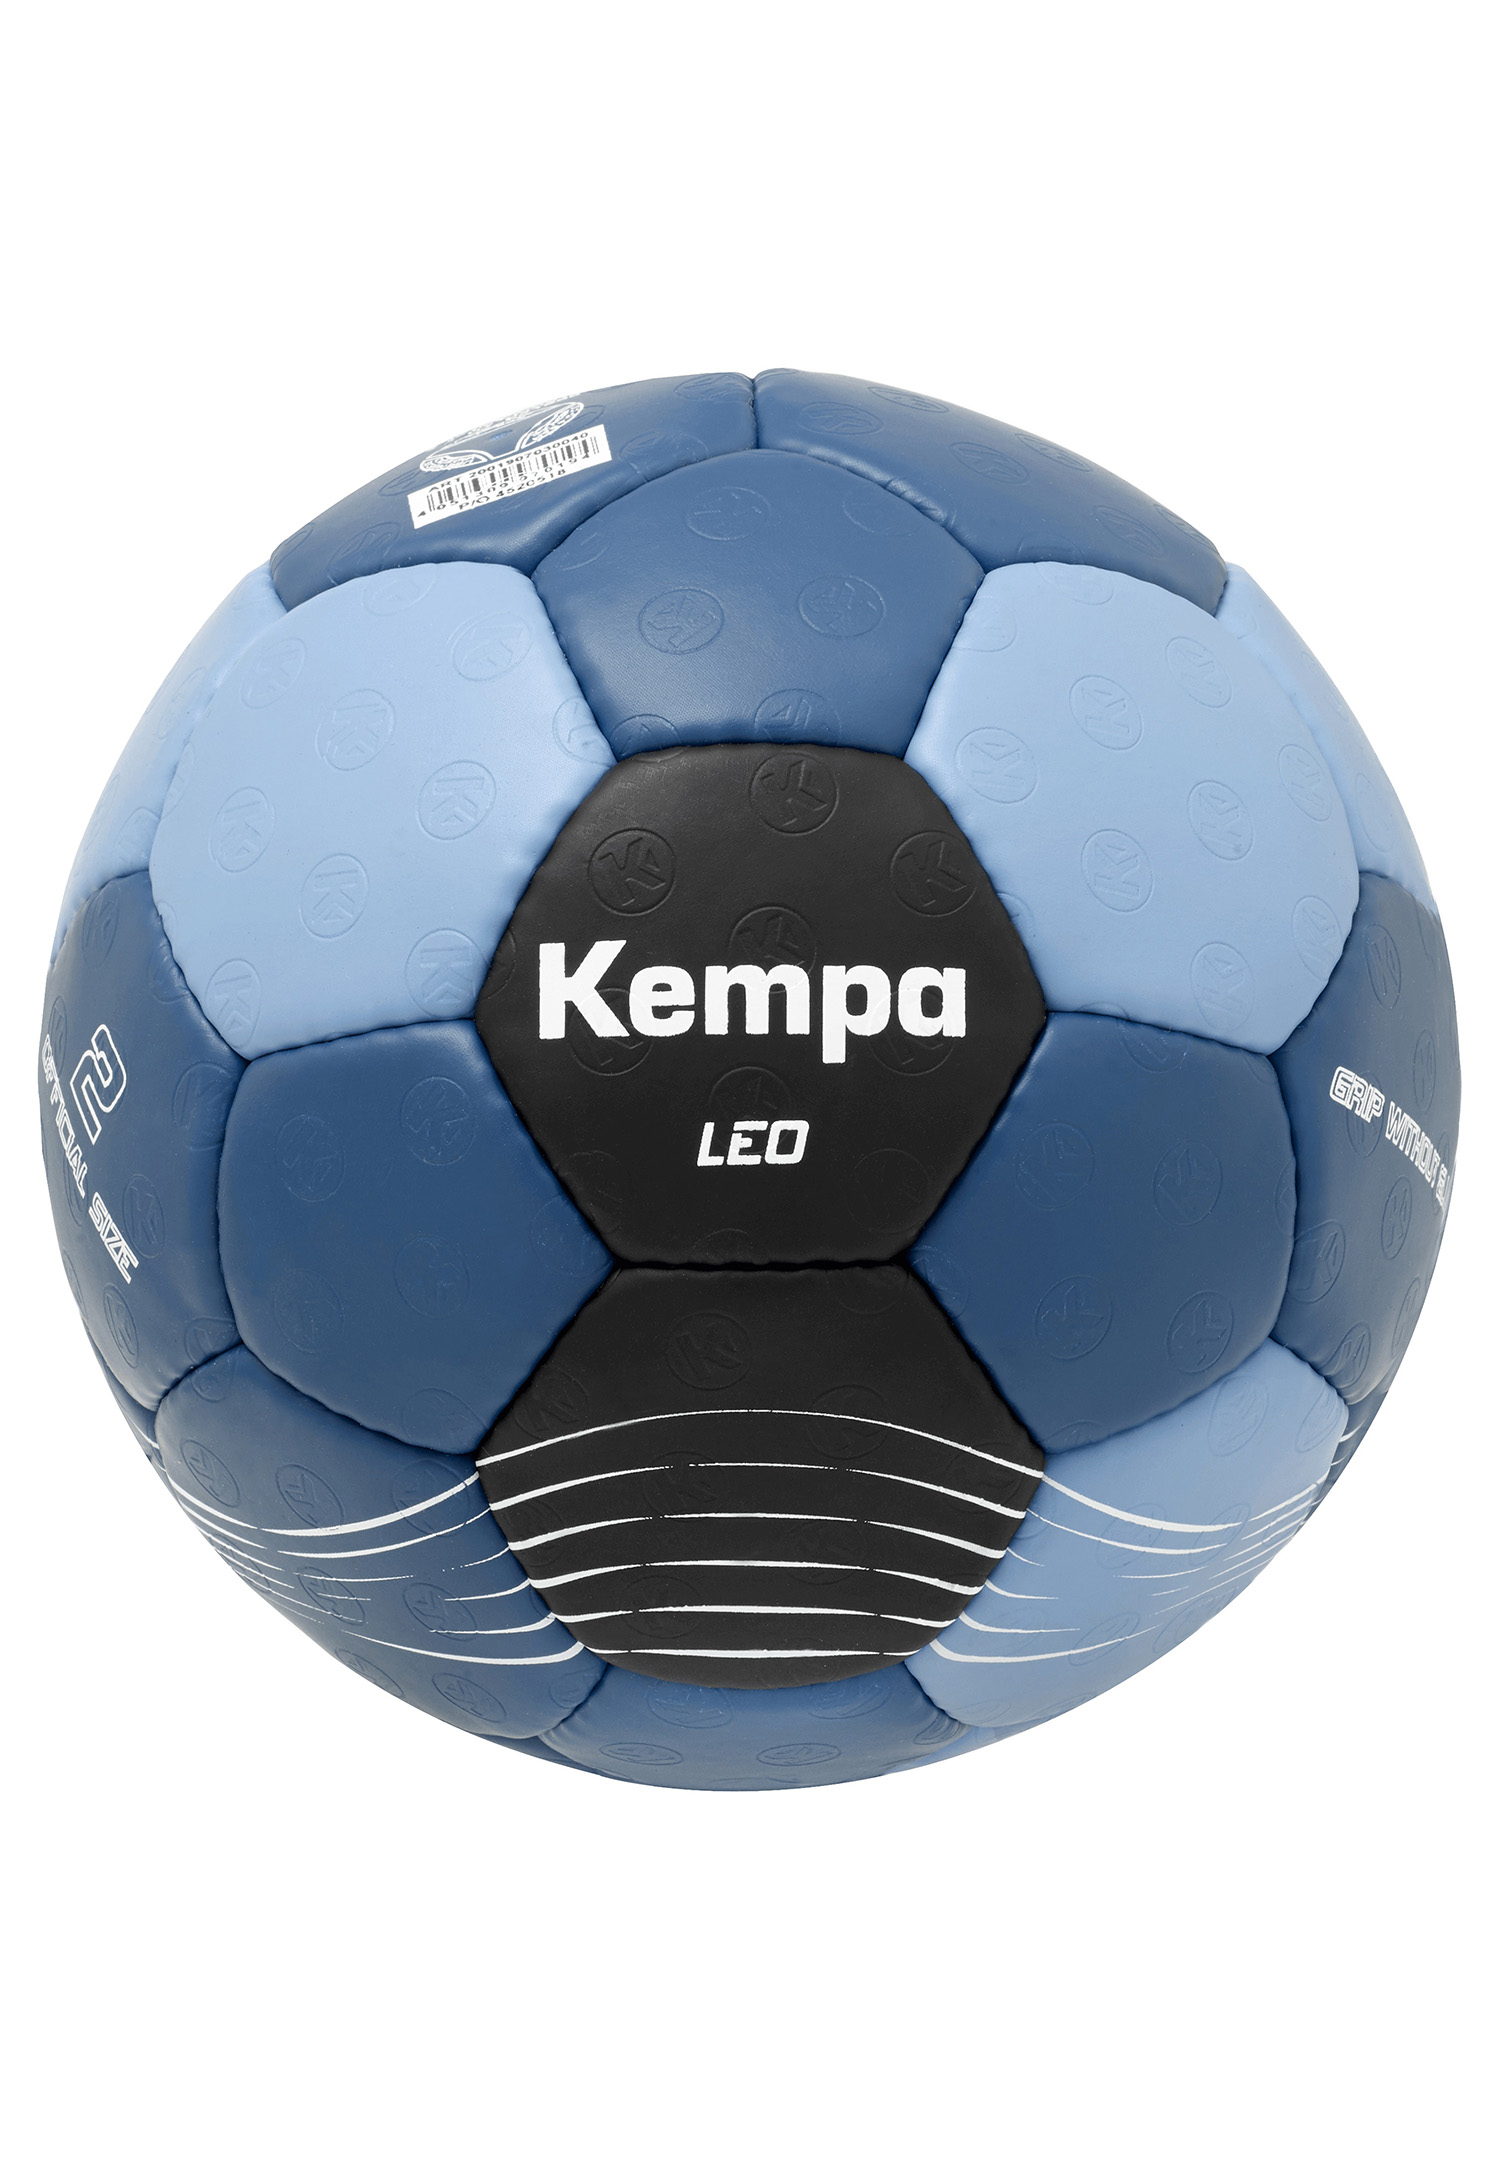 Kempa Handball Leo Size 1 200190703 blue/black